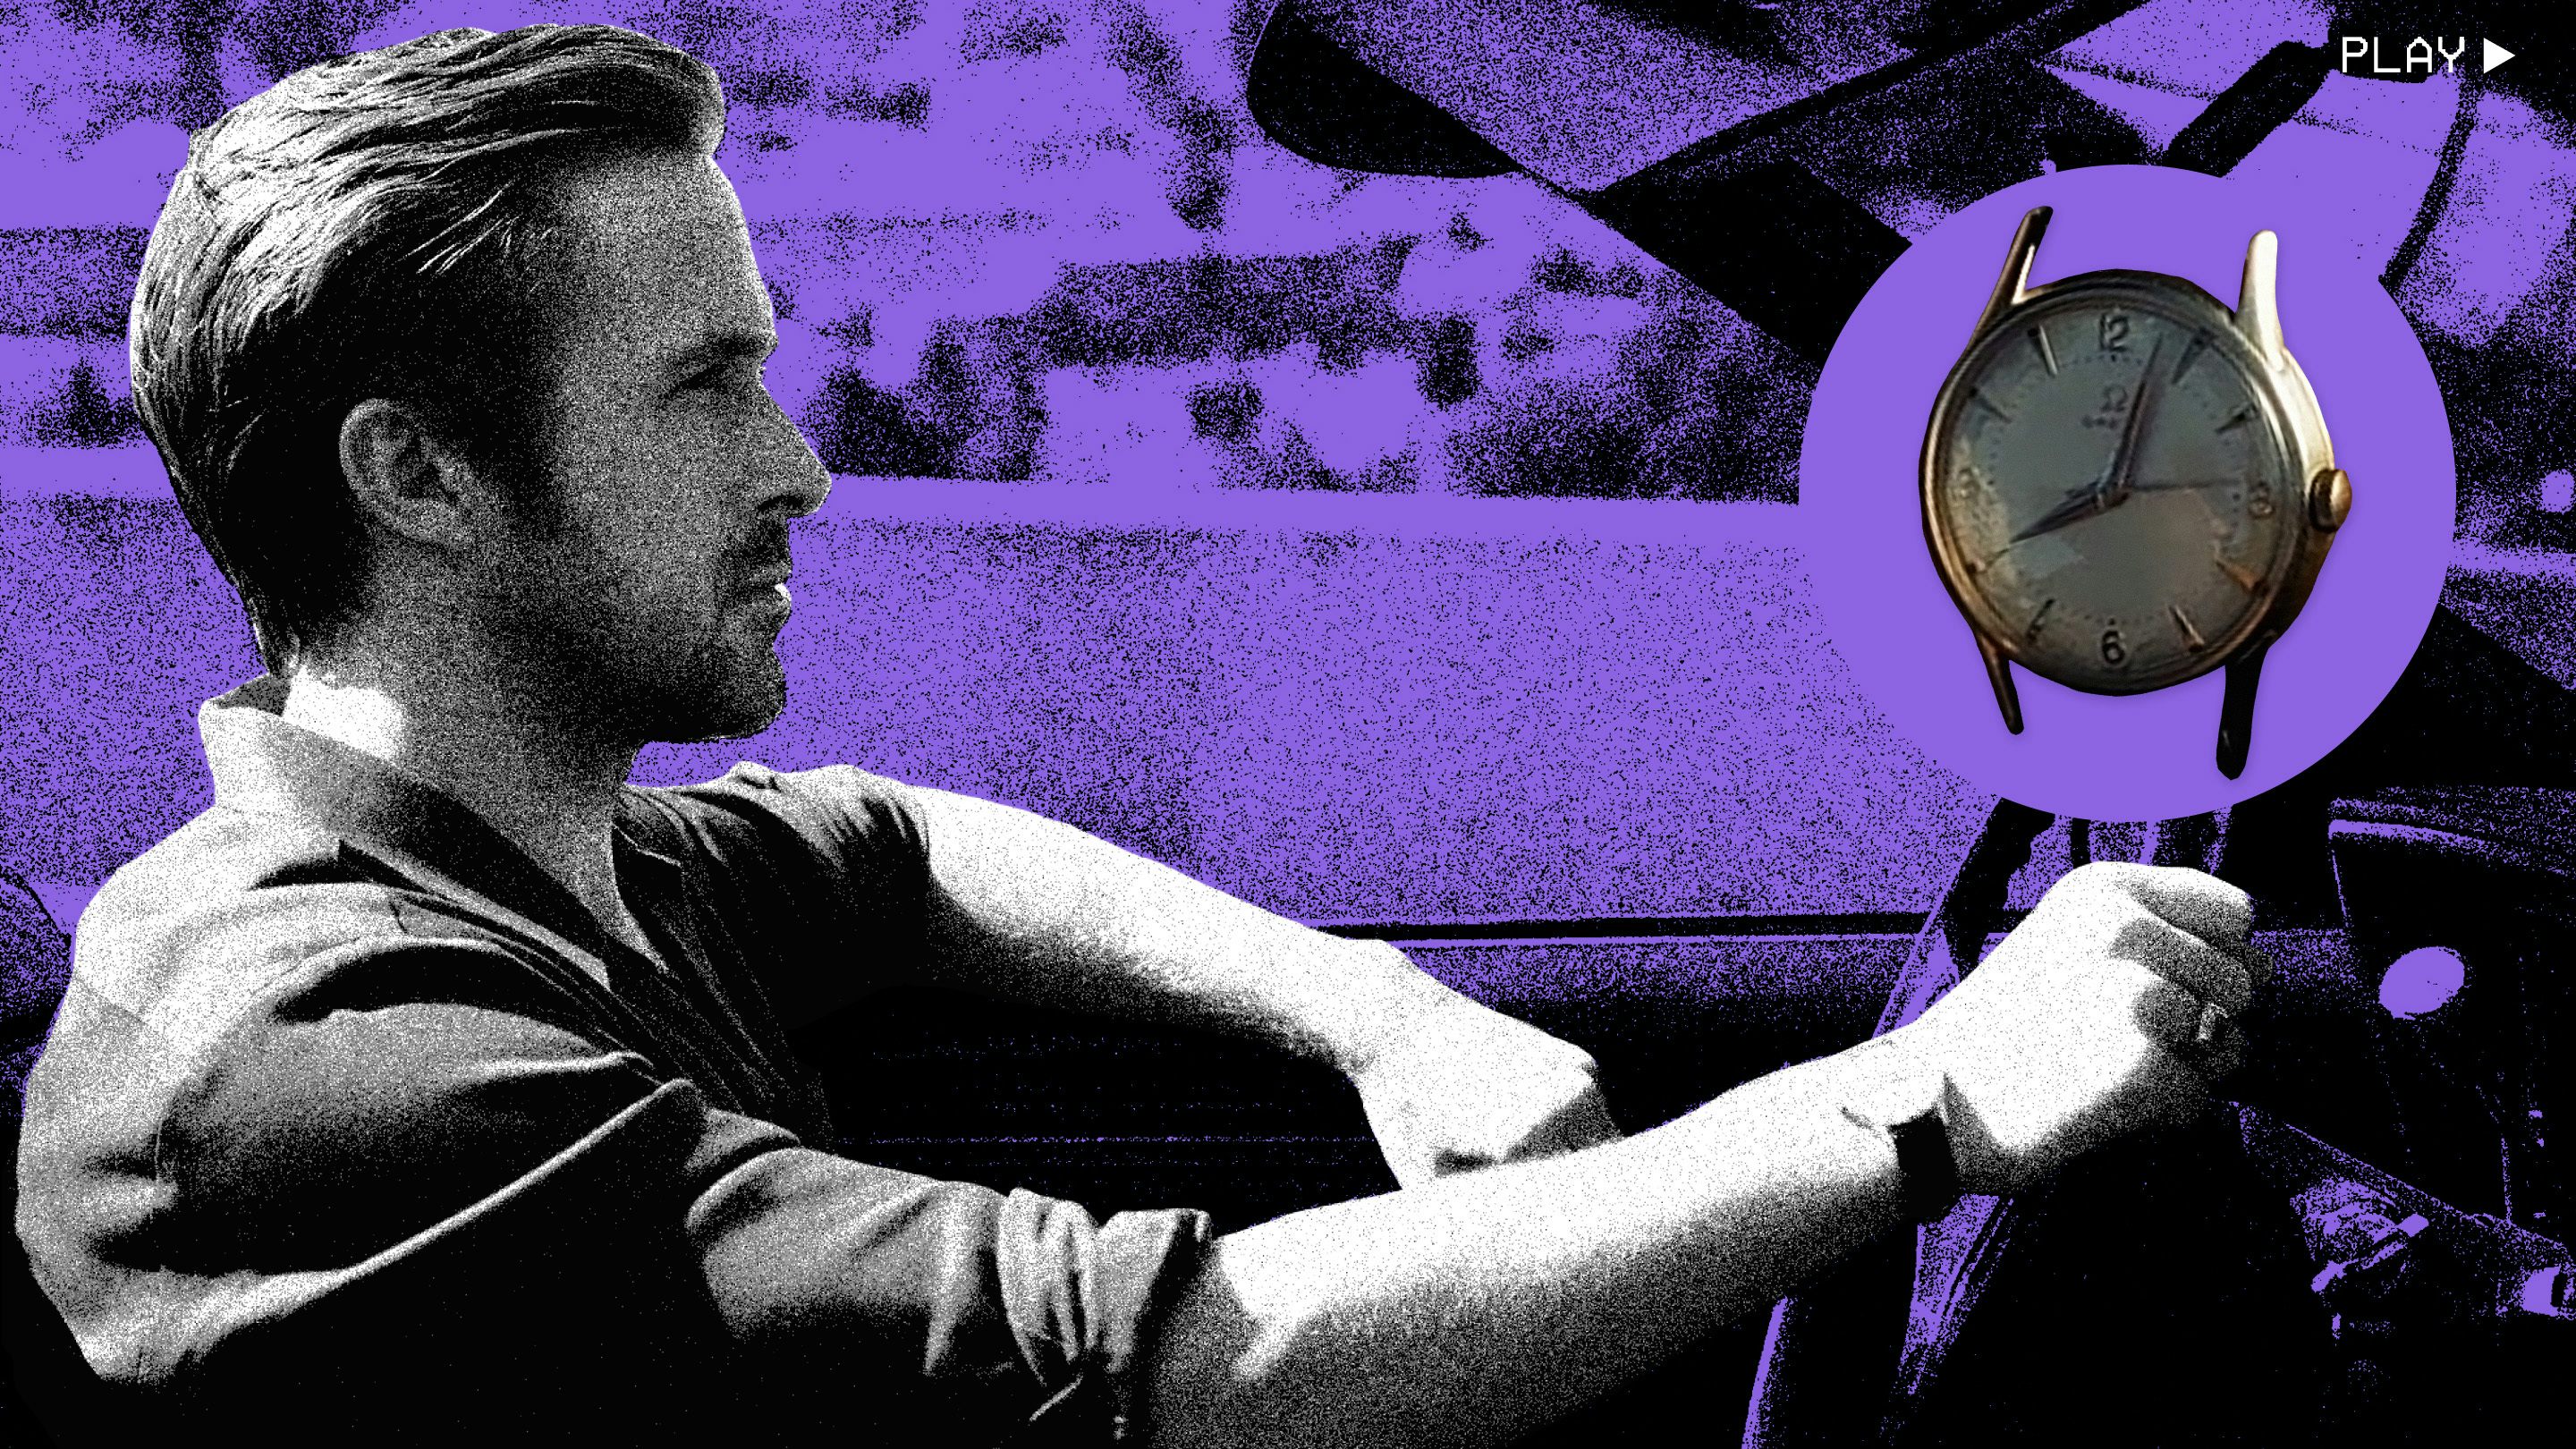 What Watch Does Ryan Gosling Wear In La La Land?